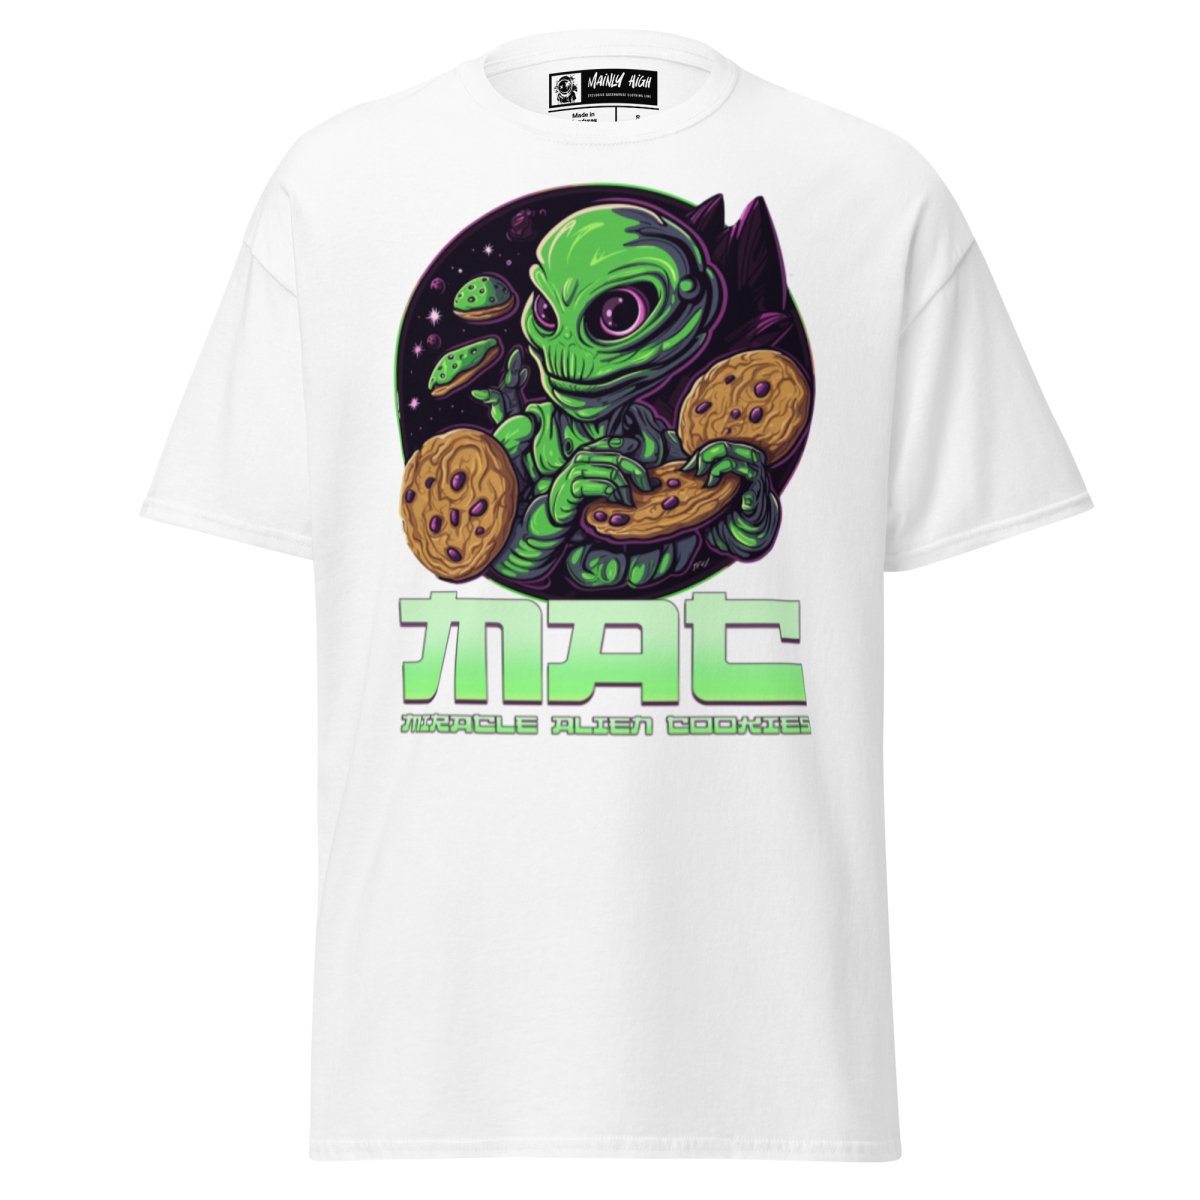 M.A.C. T-Shirt - Mainly High